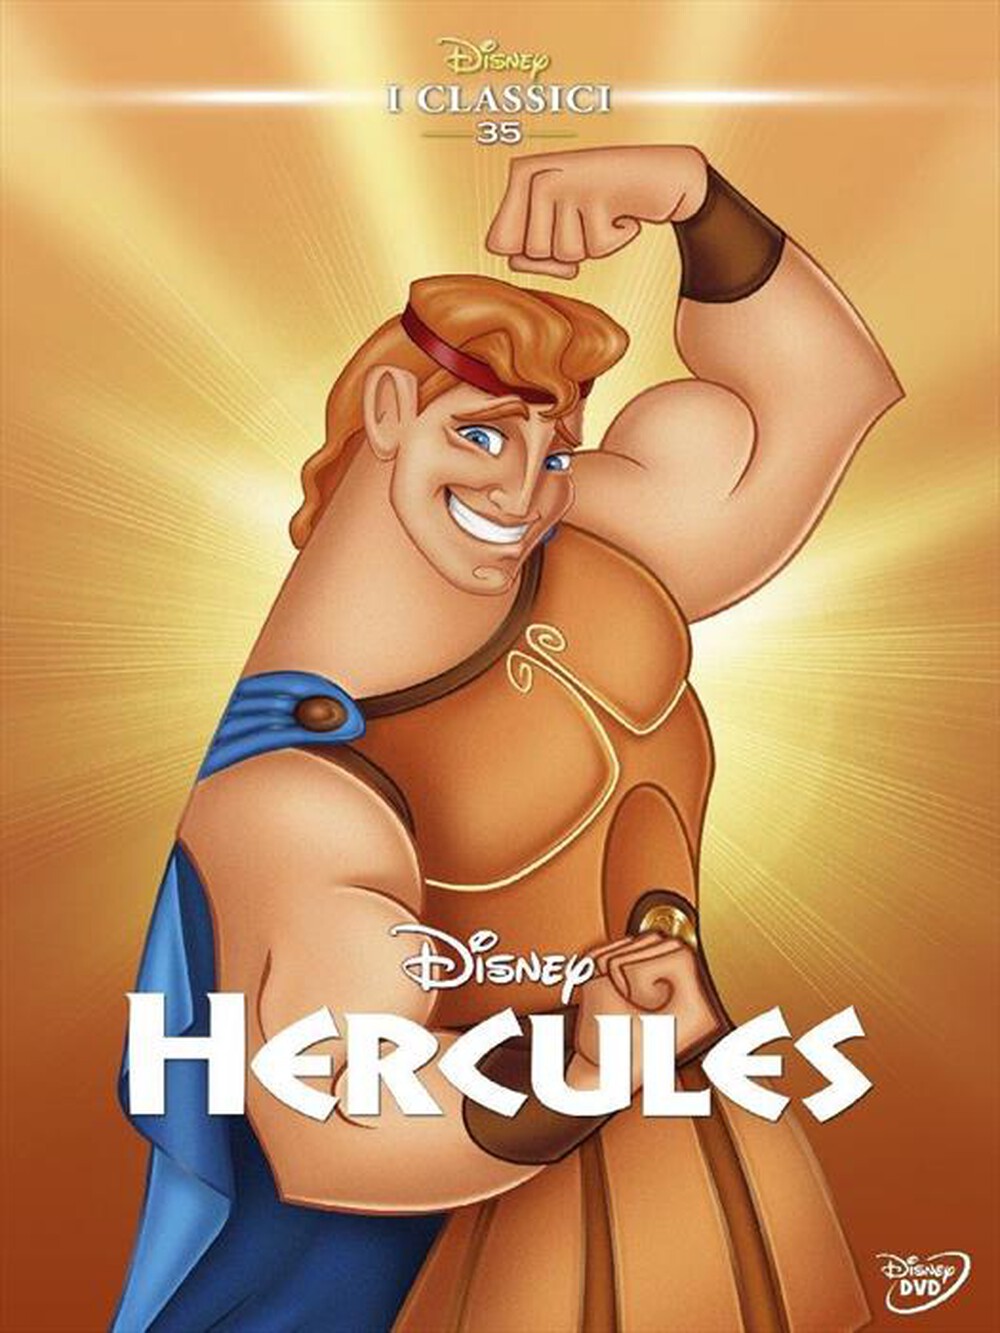 "WALT DISNEY - Hercules"